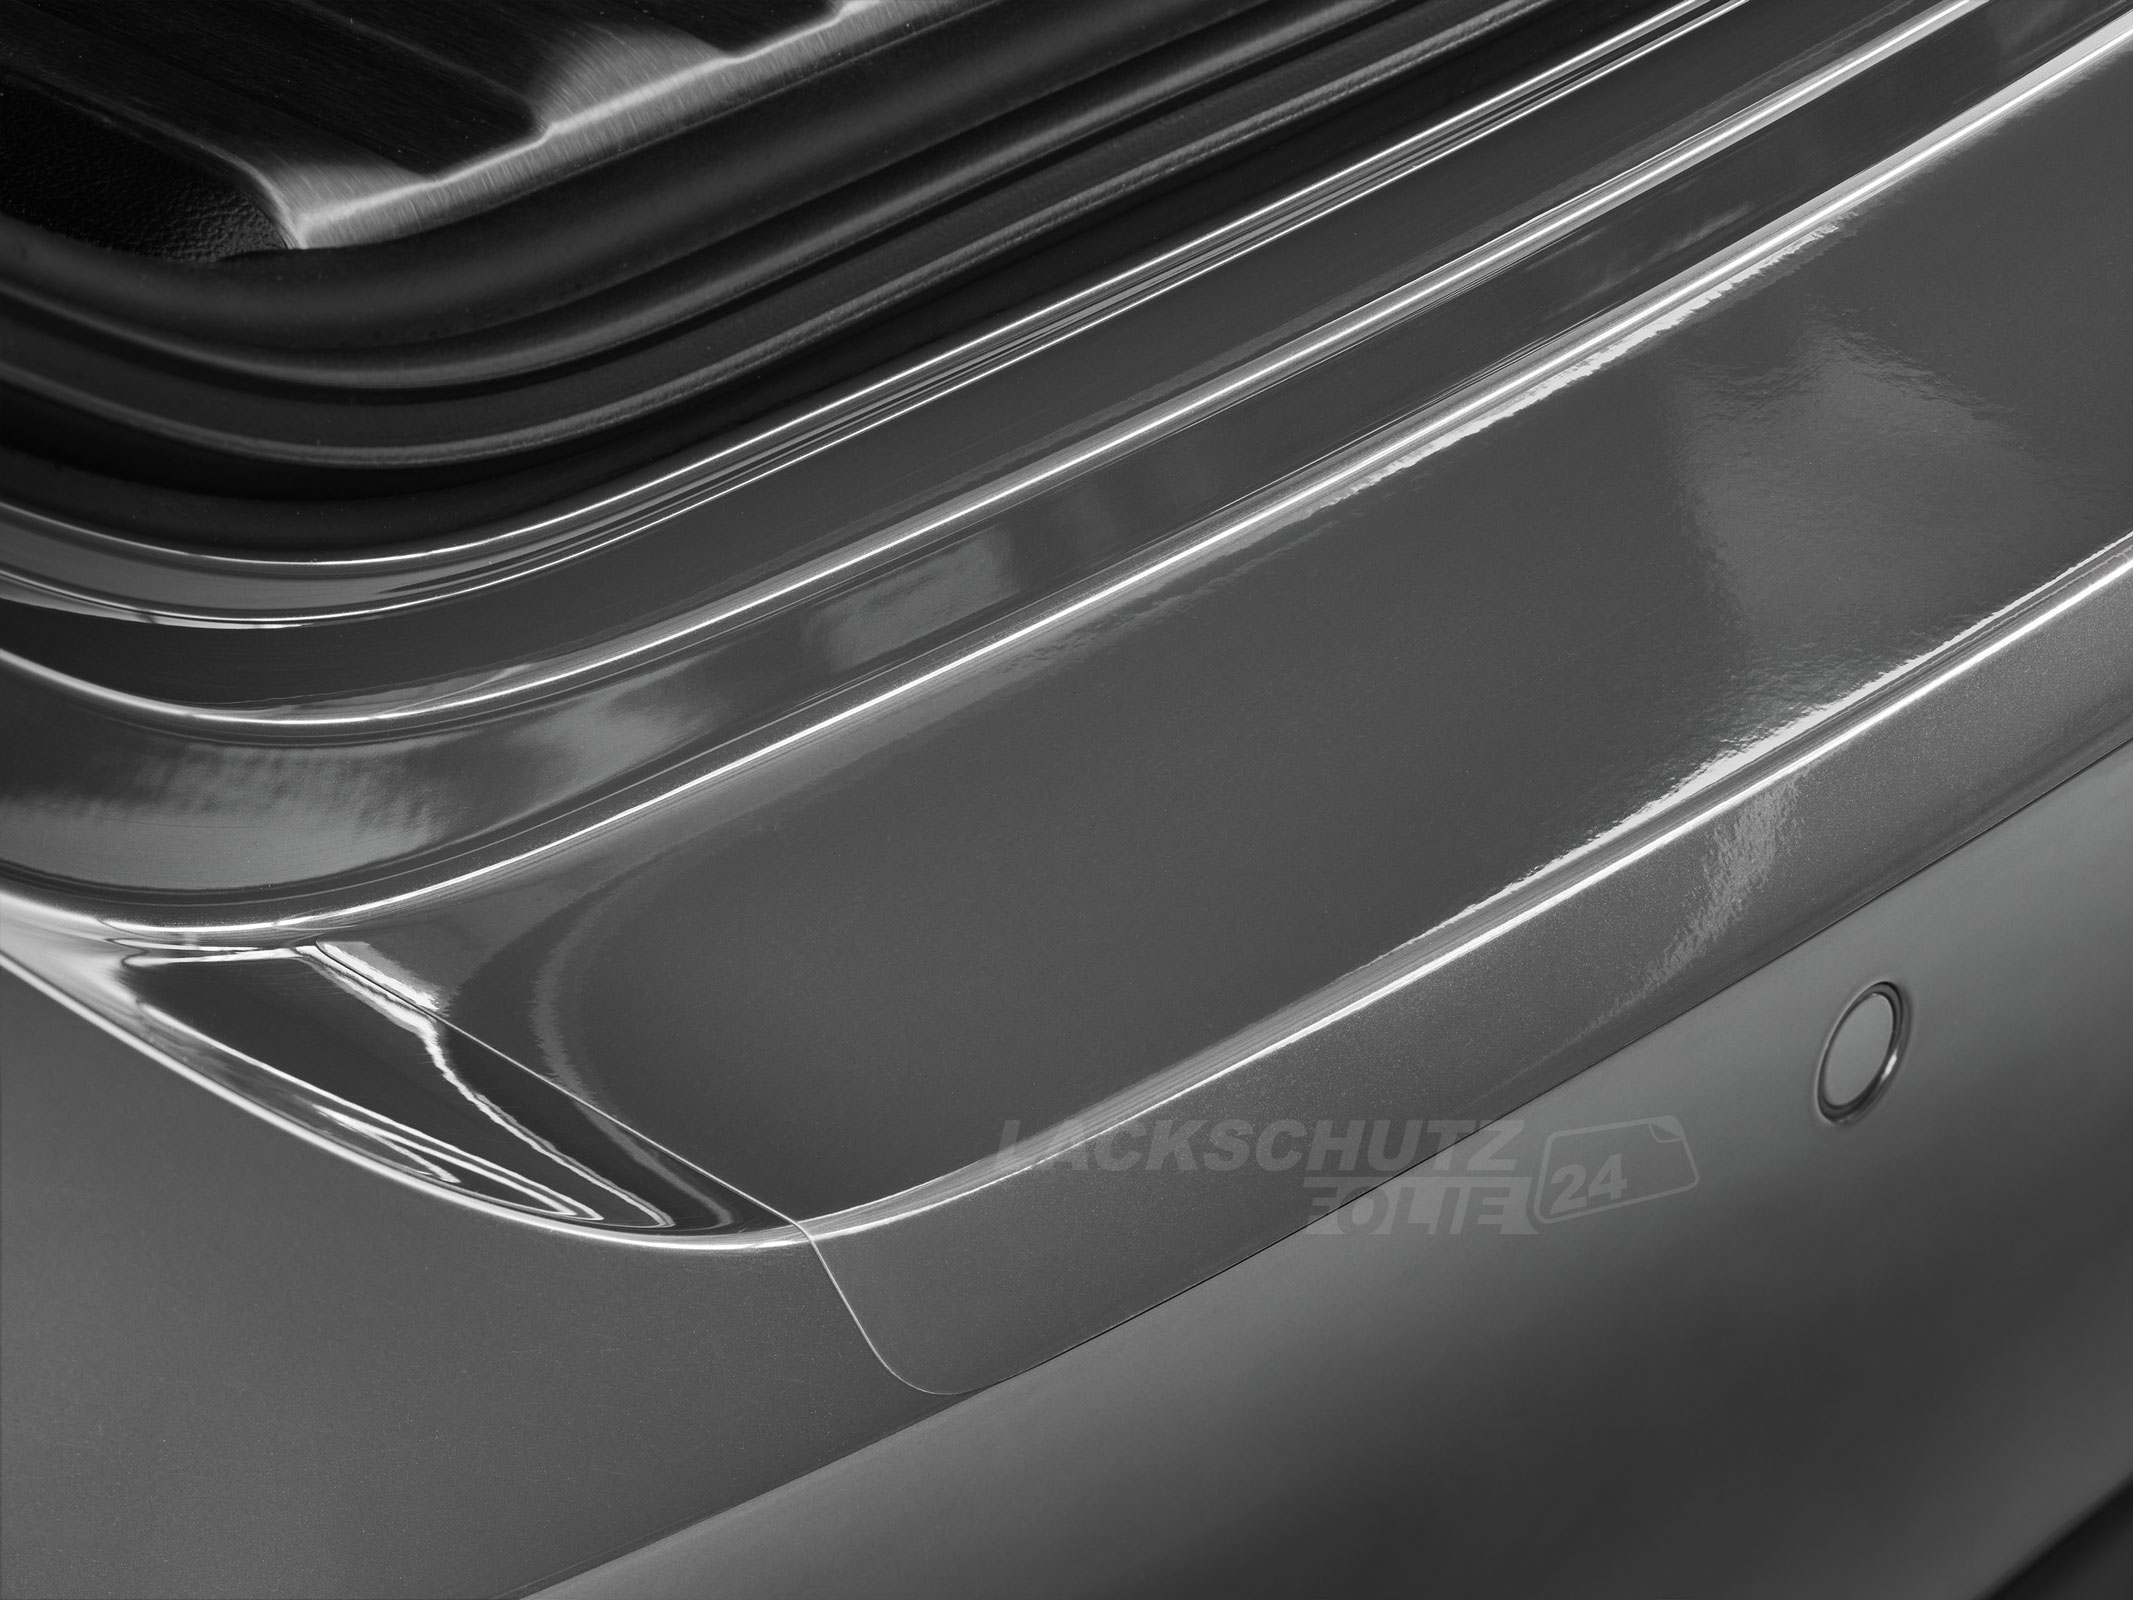 Ladekantenschutzfolie - Transparent Glatt Hochglänzend für BMW MINI Typ R55/R56, BJ 2006-2014